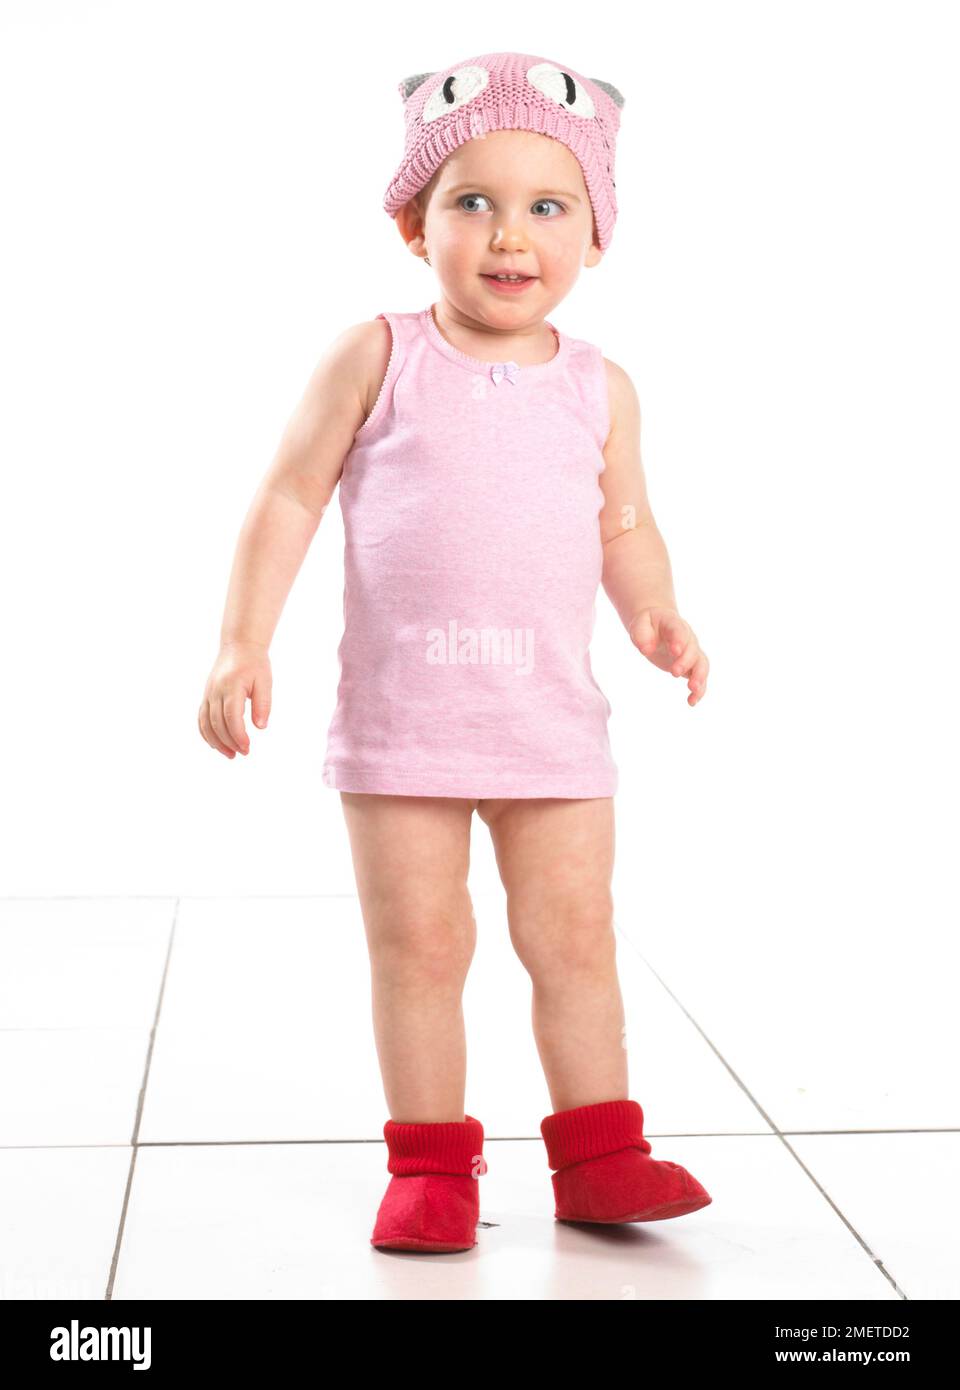 Fille portant des chaussettes rouges, haut rose et chapeau de laine rose, 19 mois Banque D'Images